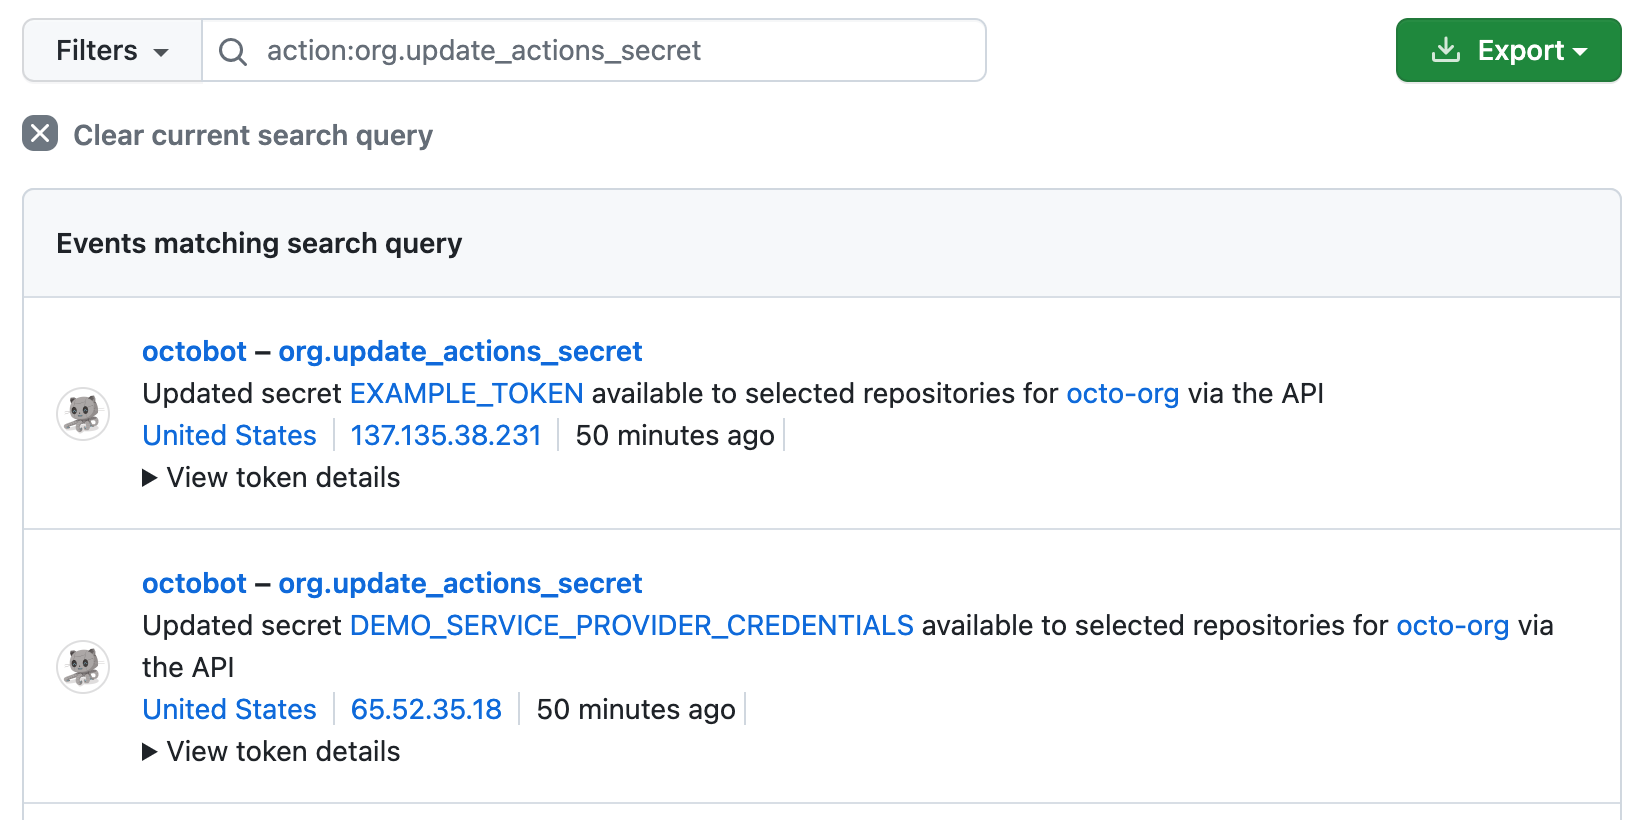 Снимок экрана: поиск "action:org.update_actions_secret" в журнале аудита для организации. Два результата обновления API подробных сведений о двух секретах, доступных для выбранных репозиториев.